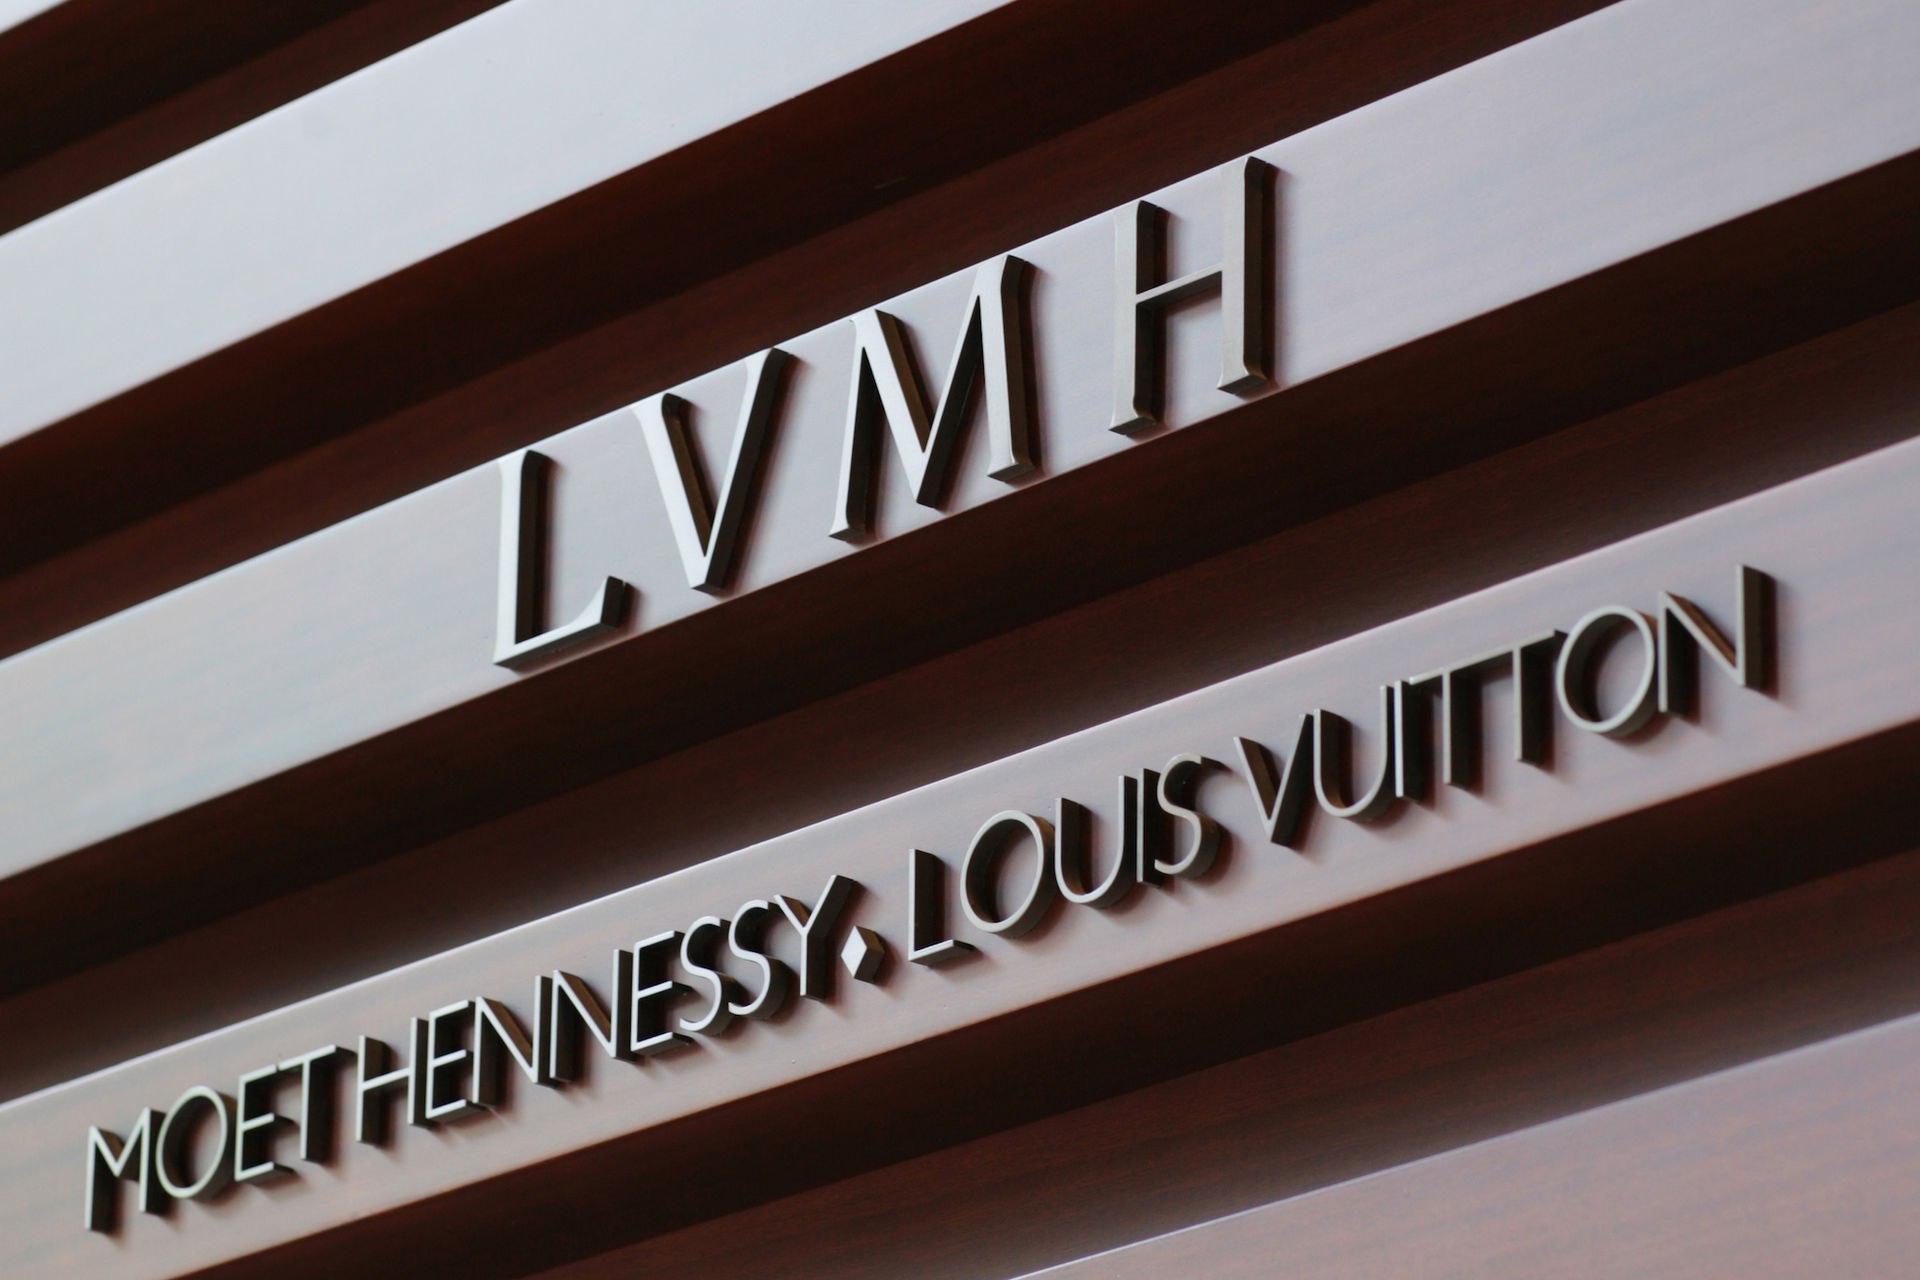   LVMH sở hữu những thương hiệu như Louis Vuitton, Christian Dior, Bvlgari, Hublot, Zenith...  